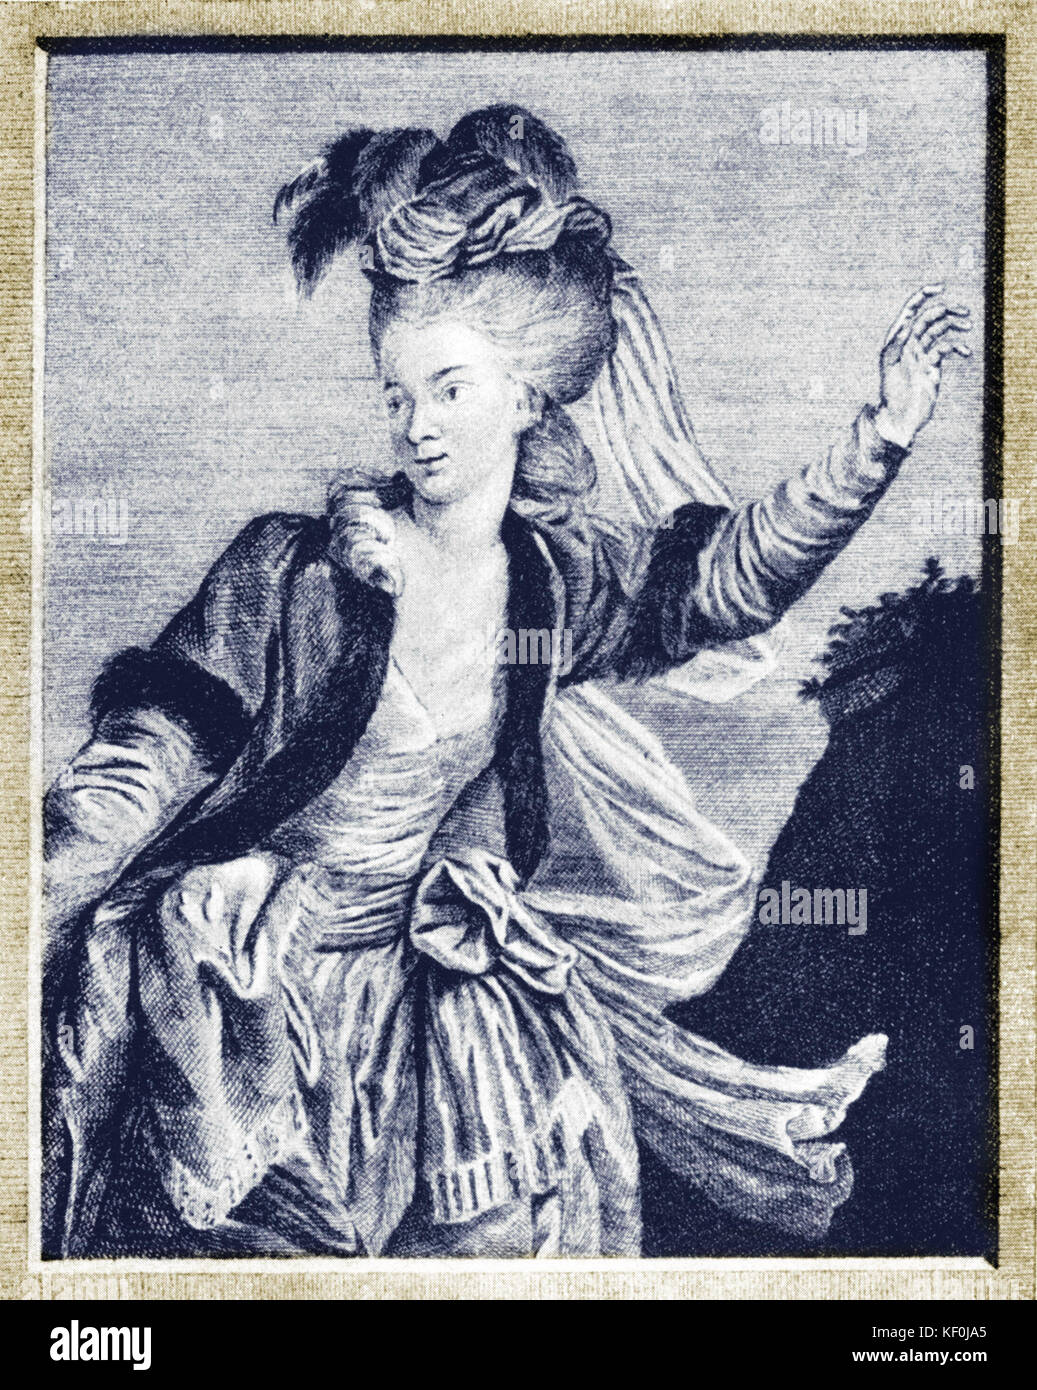 Mozarts Schwägerin Aloysia Weber Lange als Gretry Zemire in der Oper "Zemire und Azor". Von Johann Esaias Nilson, 1784 Lithographie. Stockfoto